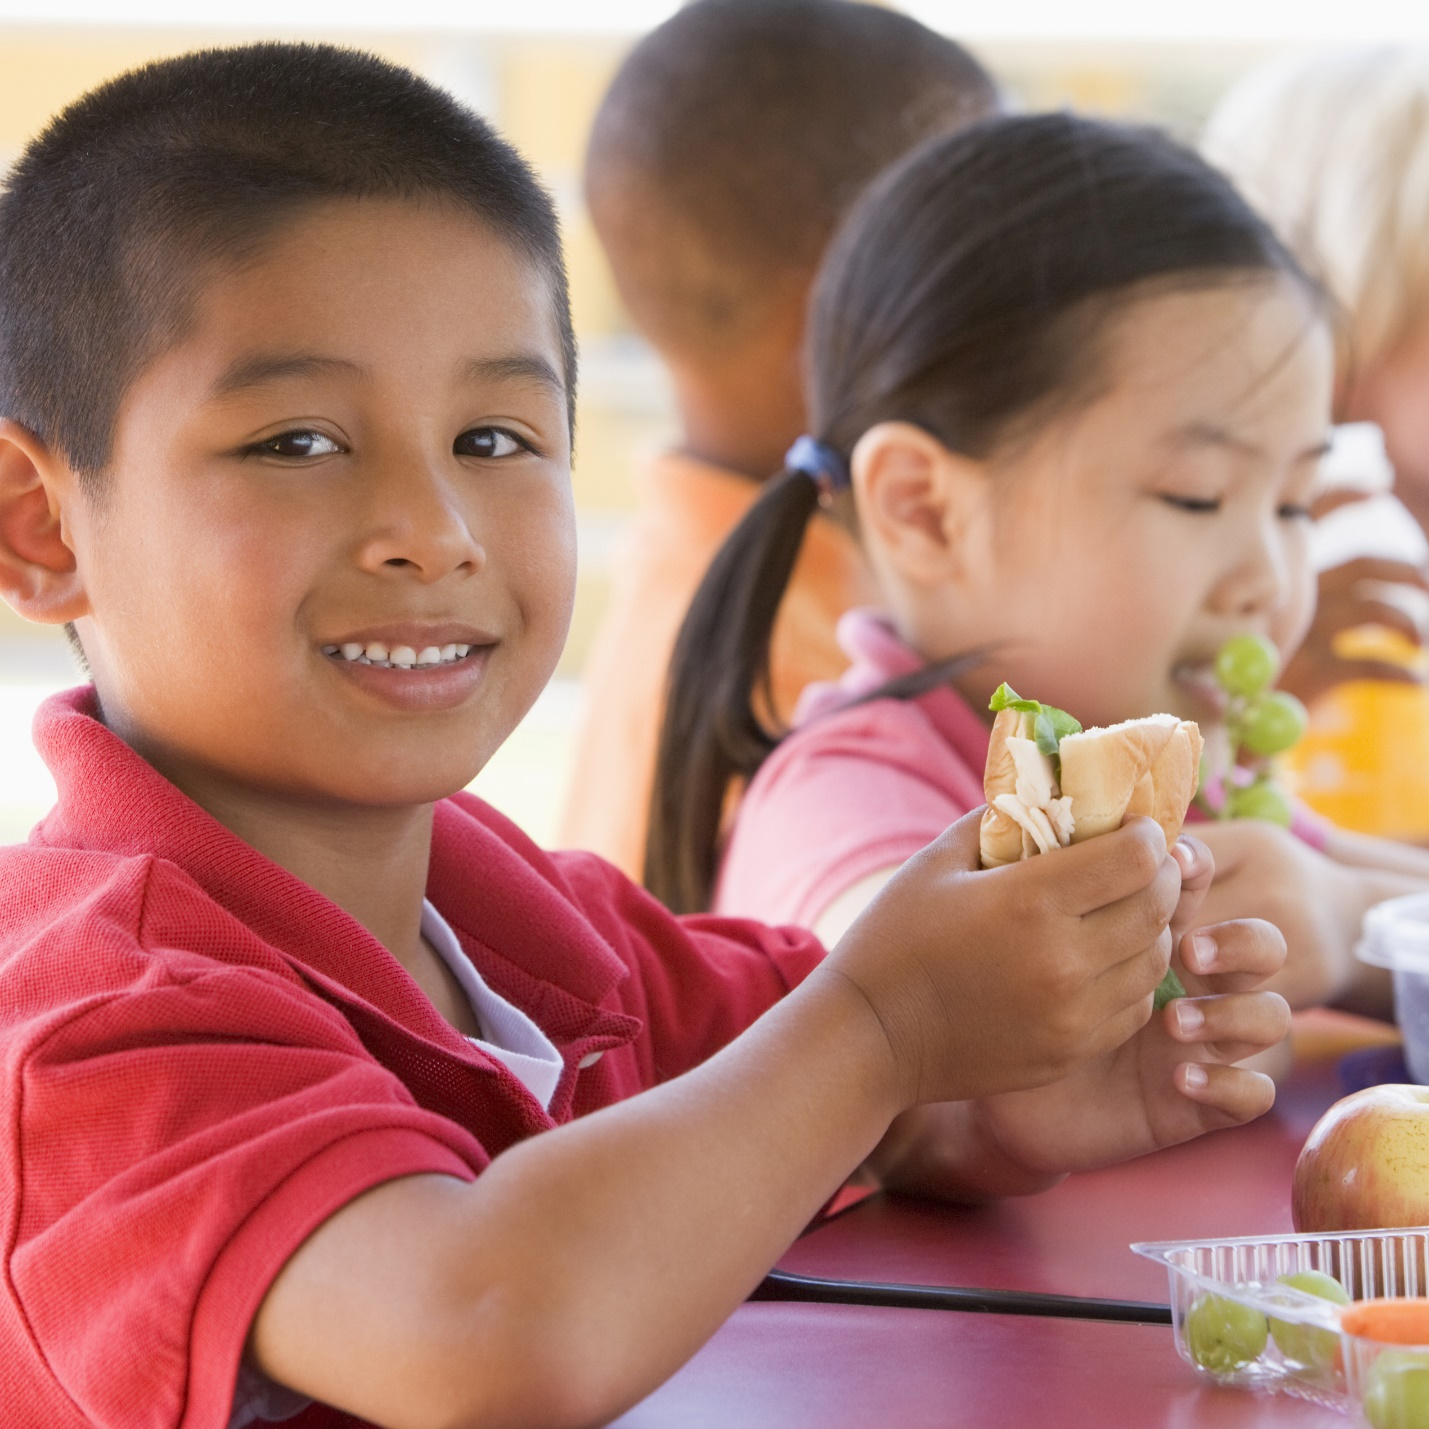 Suy dinh dưỡng vẫn là một thách thức lớn đối với trẻ em Đông Nam Á - 3